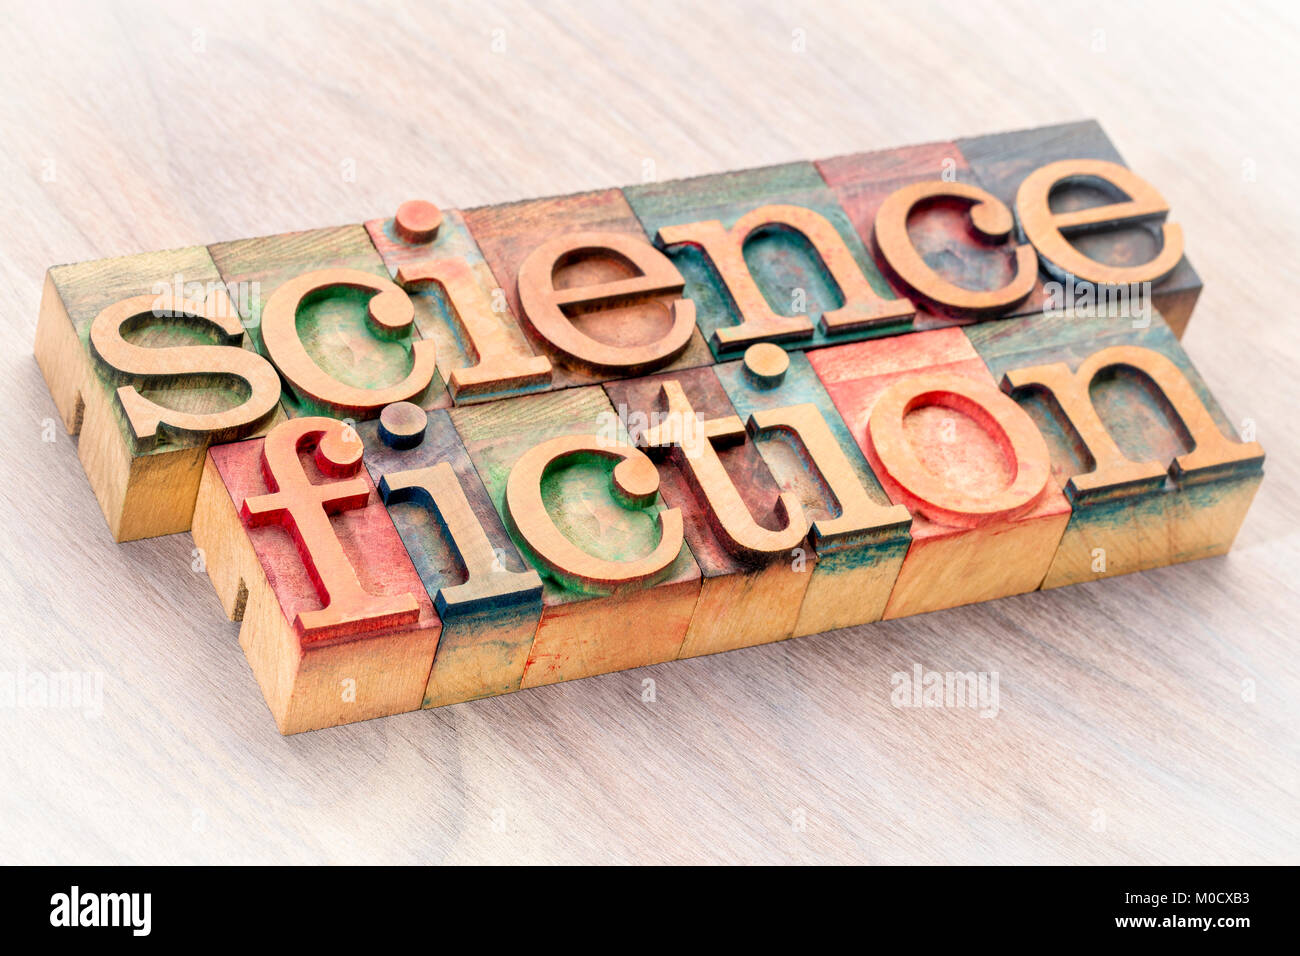 Mot de science-fiction résumé dans la typographie type de blocs d'impression Banque D'Images